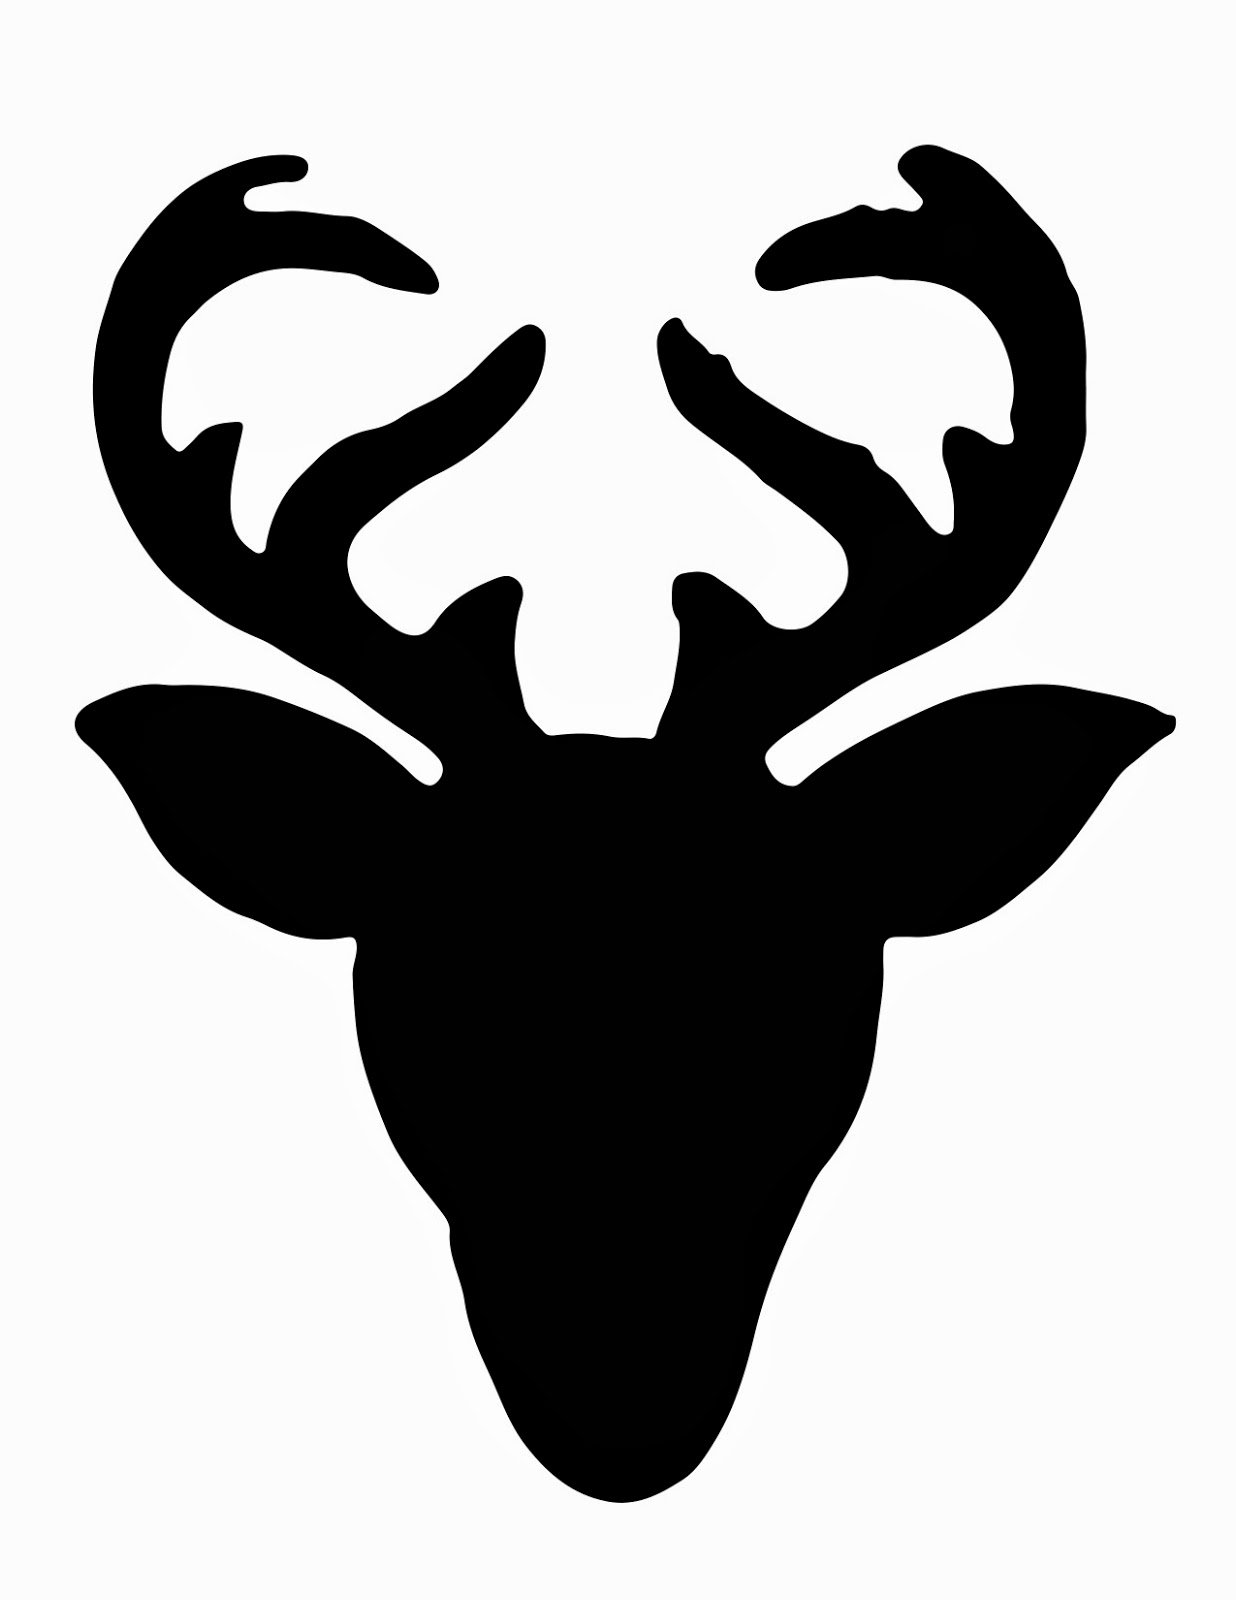 6 Best Images of Deer Head Silhouette Free Printable Free Deer Head